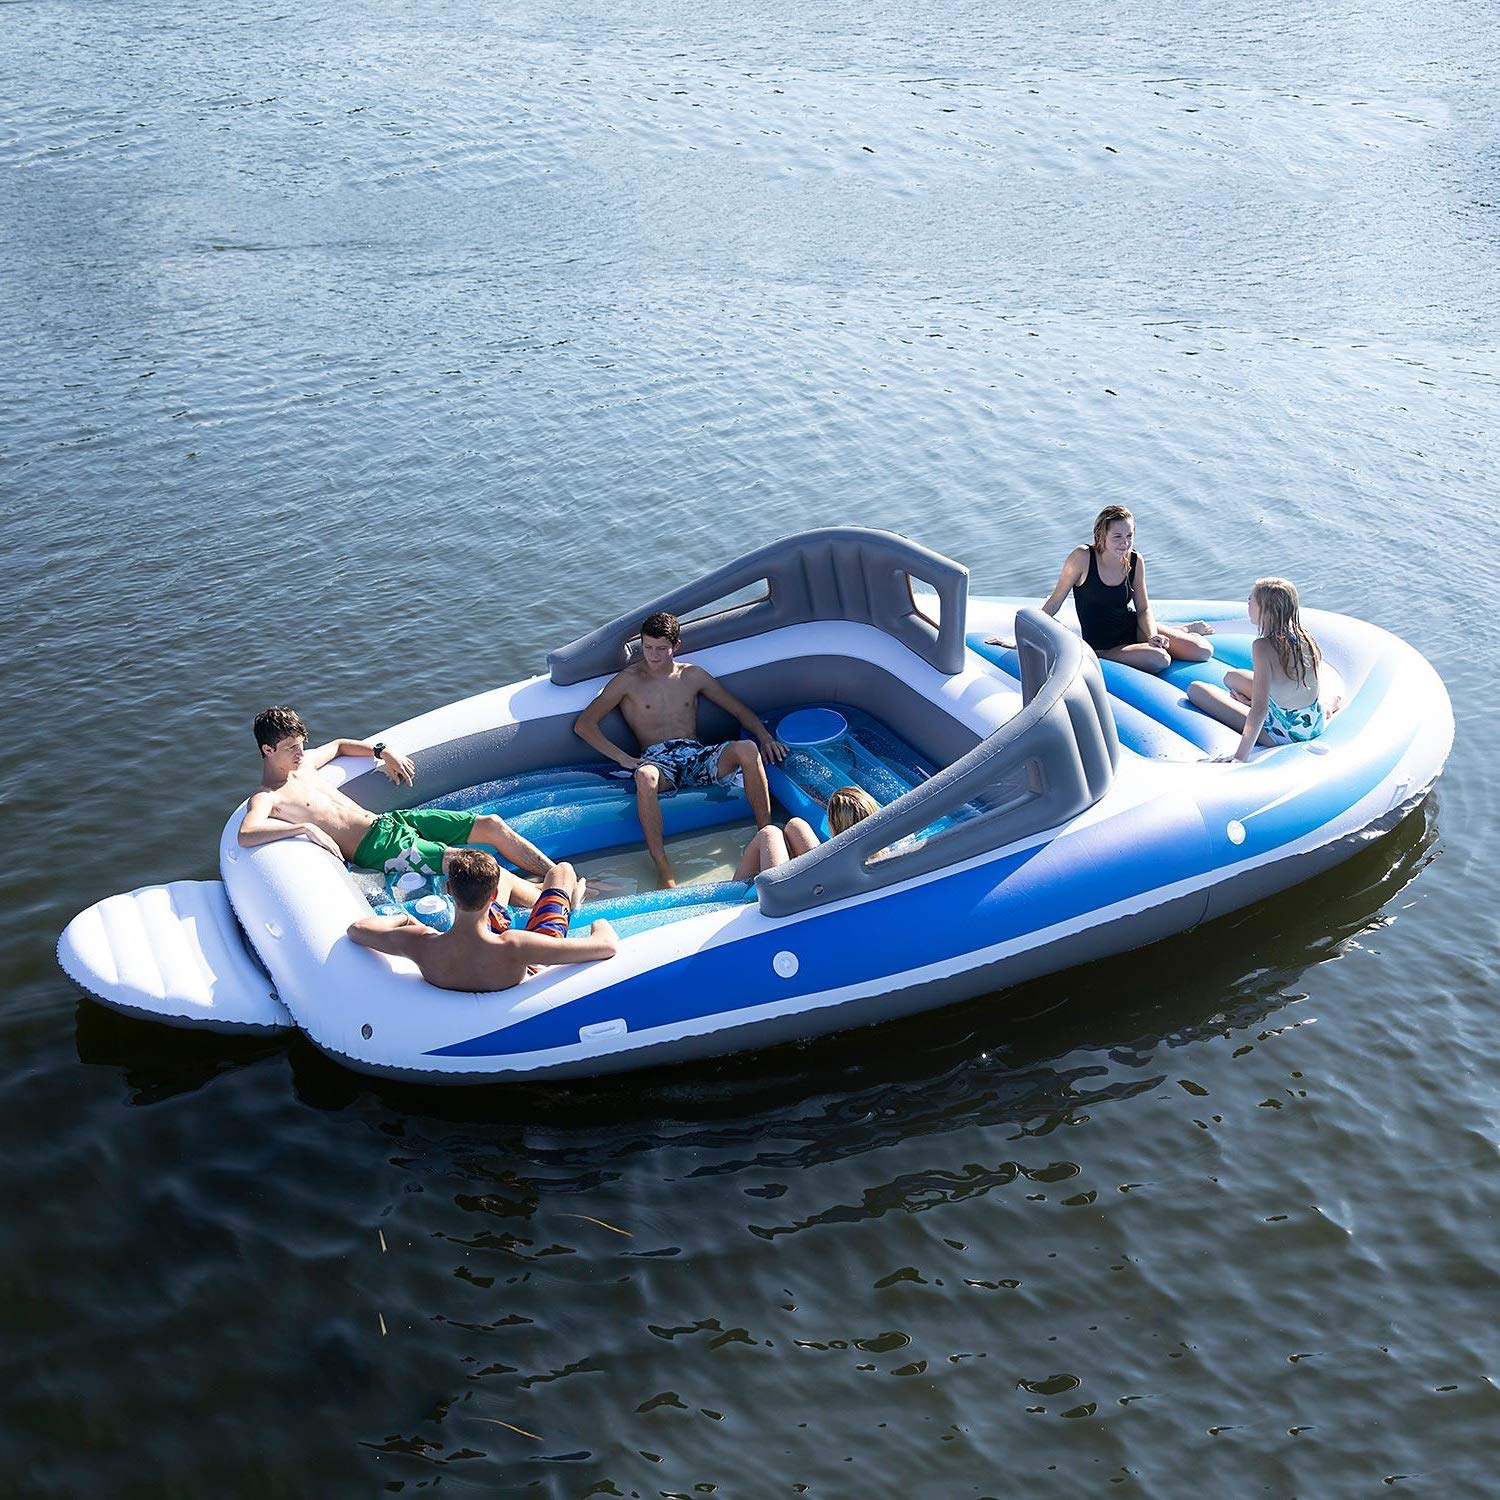 Amazon vend un bateau gonflable géant pouvant accueillir 6 ... - 1500 x 1500 jpeg 341kB